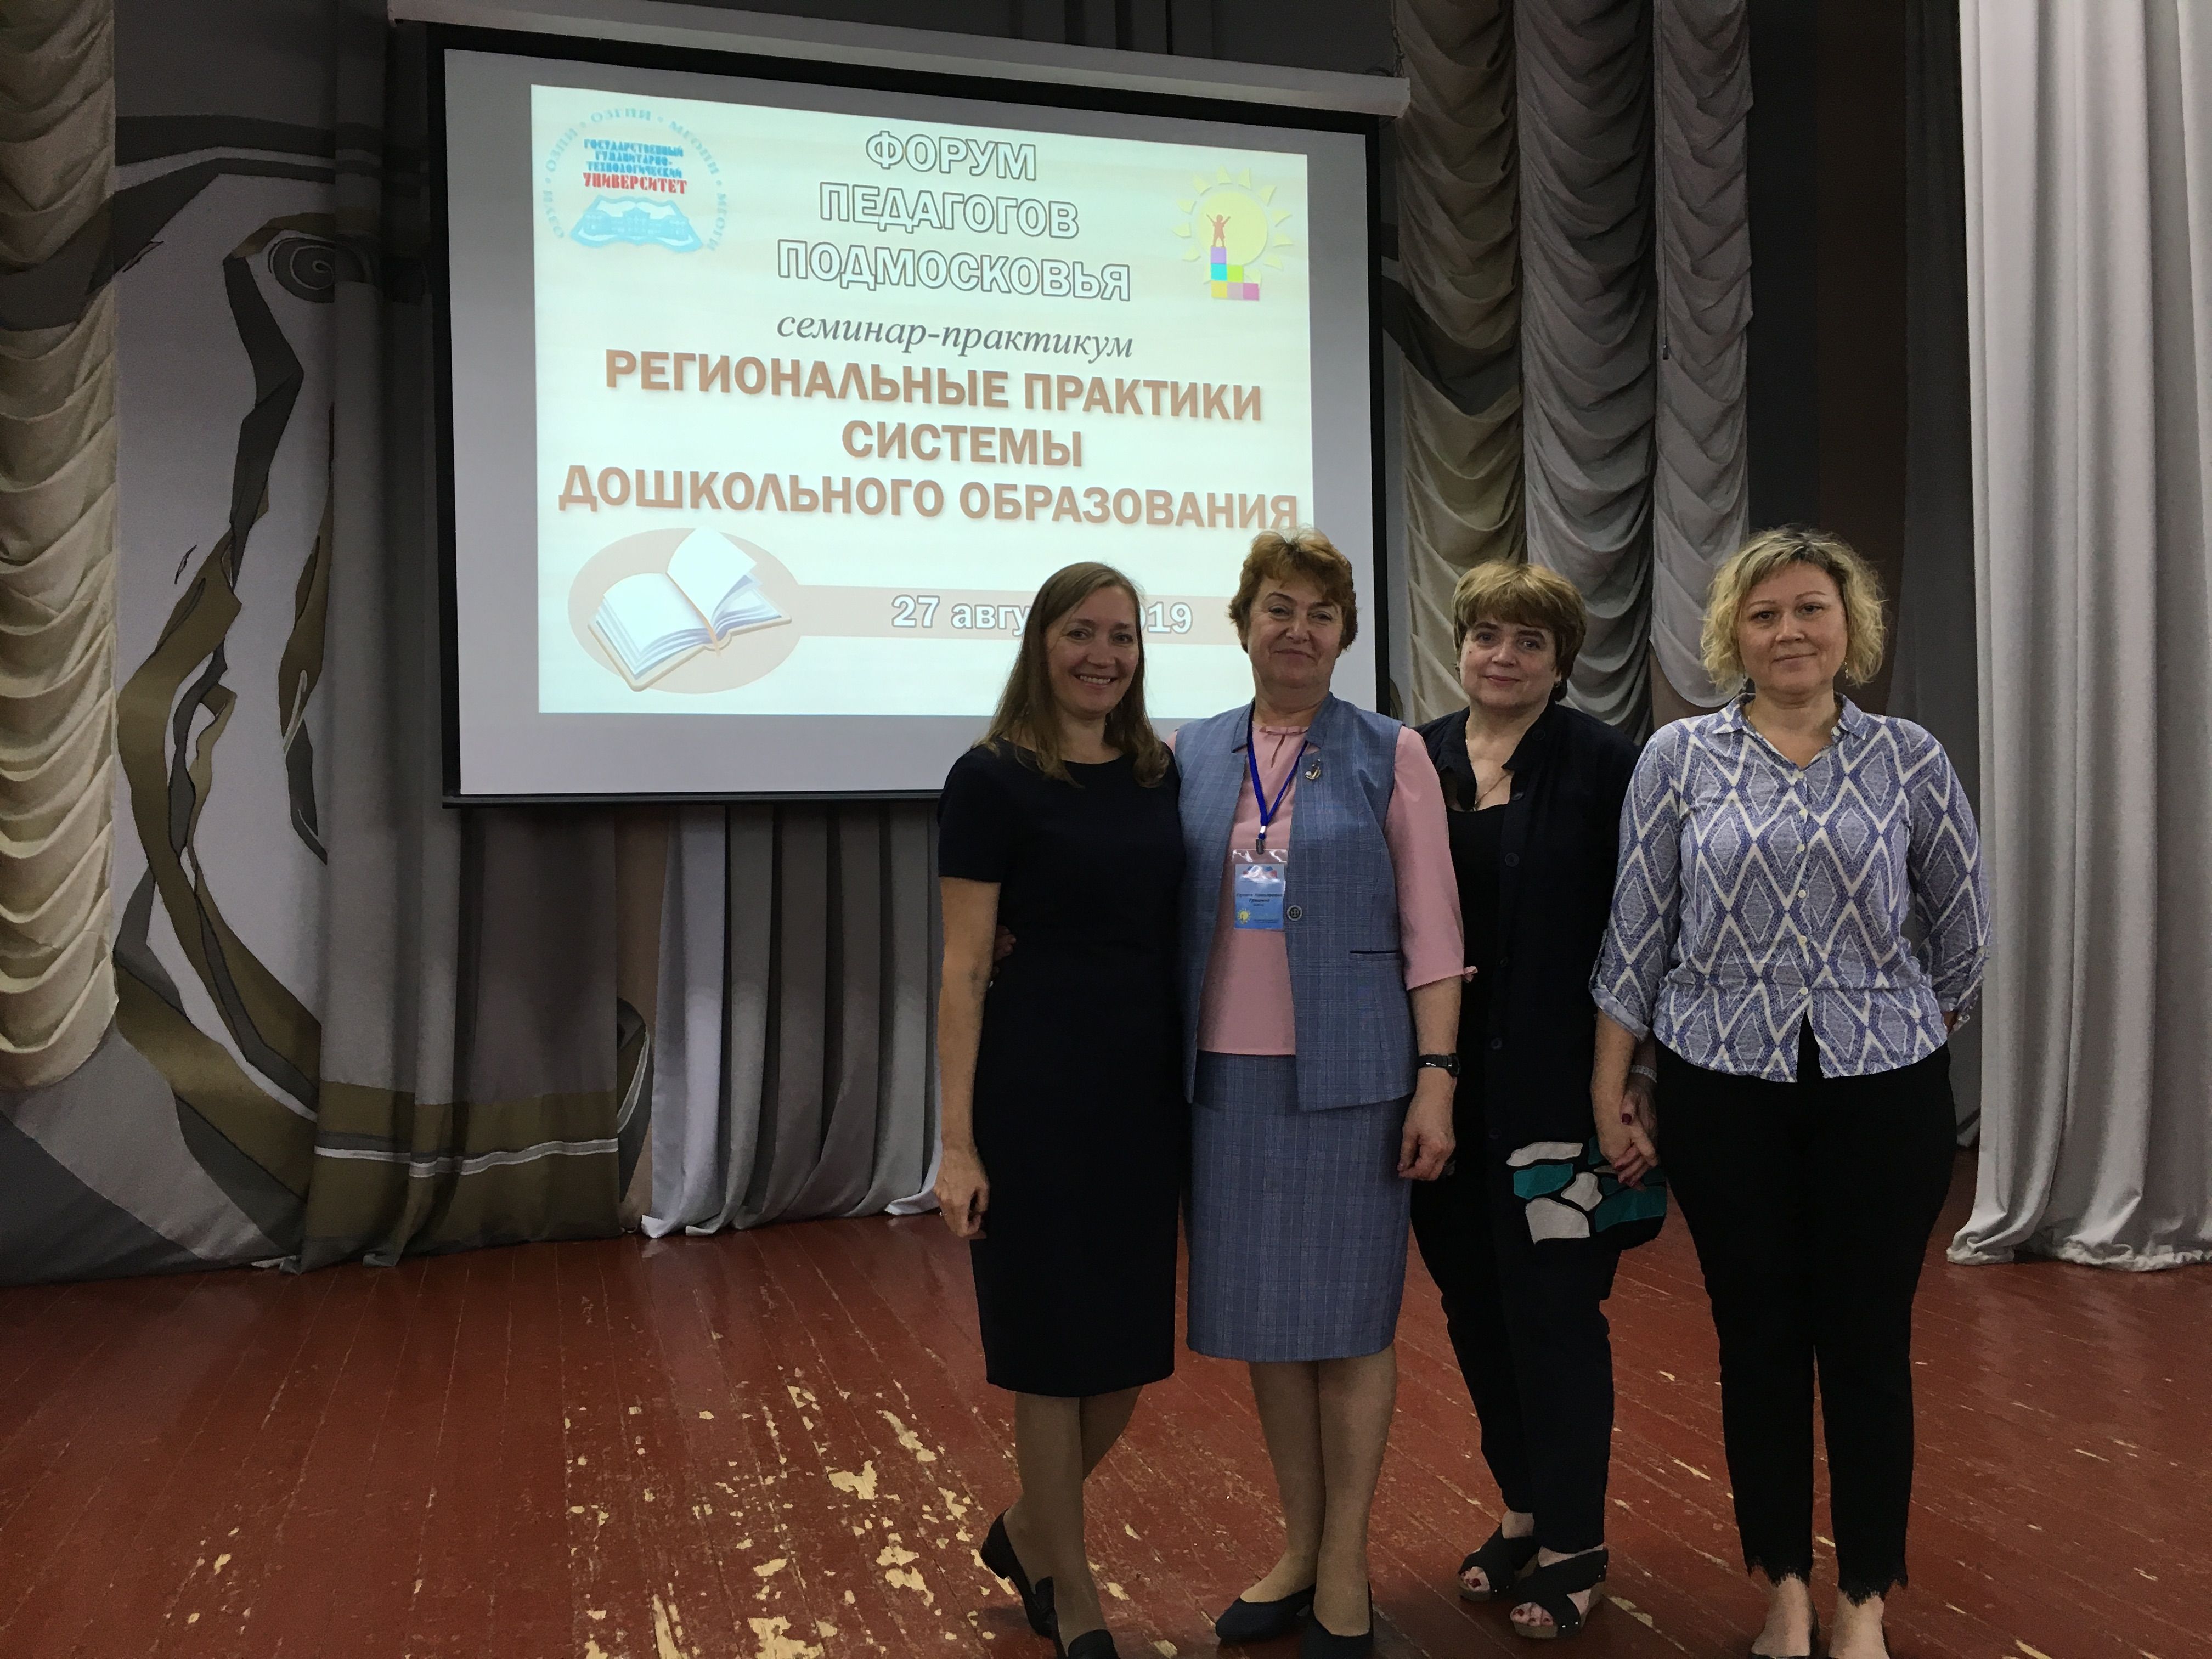 27 августа 2019 г. состоялся семинар-практикум "Региональные практики системы дошкольного образования"